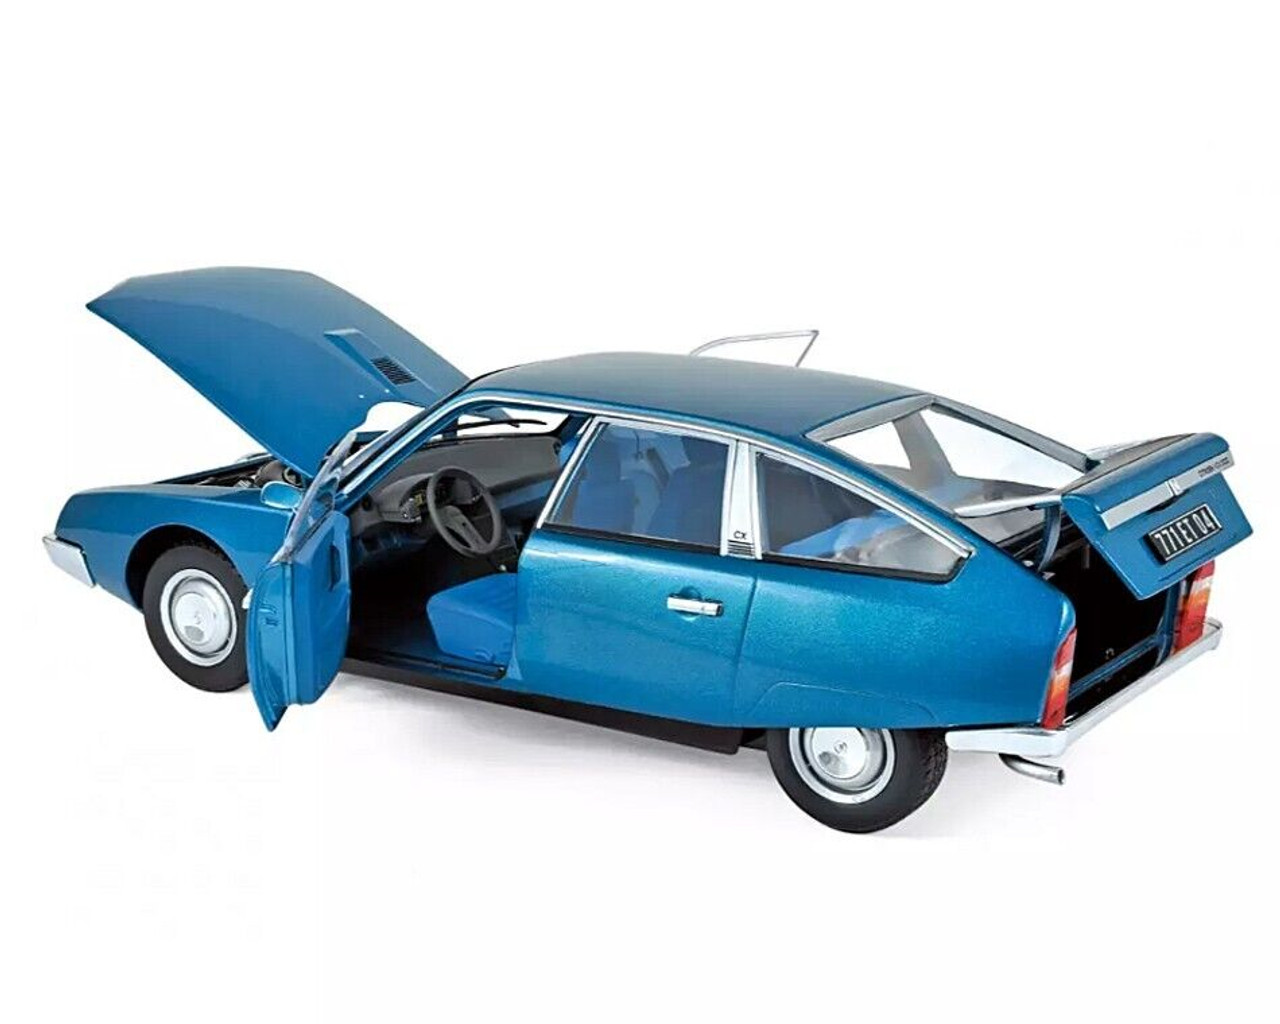 1/18 Norev 1974 Citroen CX 2000 Delta (Blue Metallic) Diecast Car Model